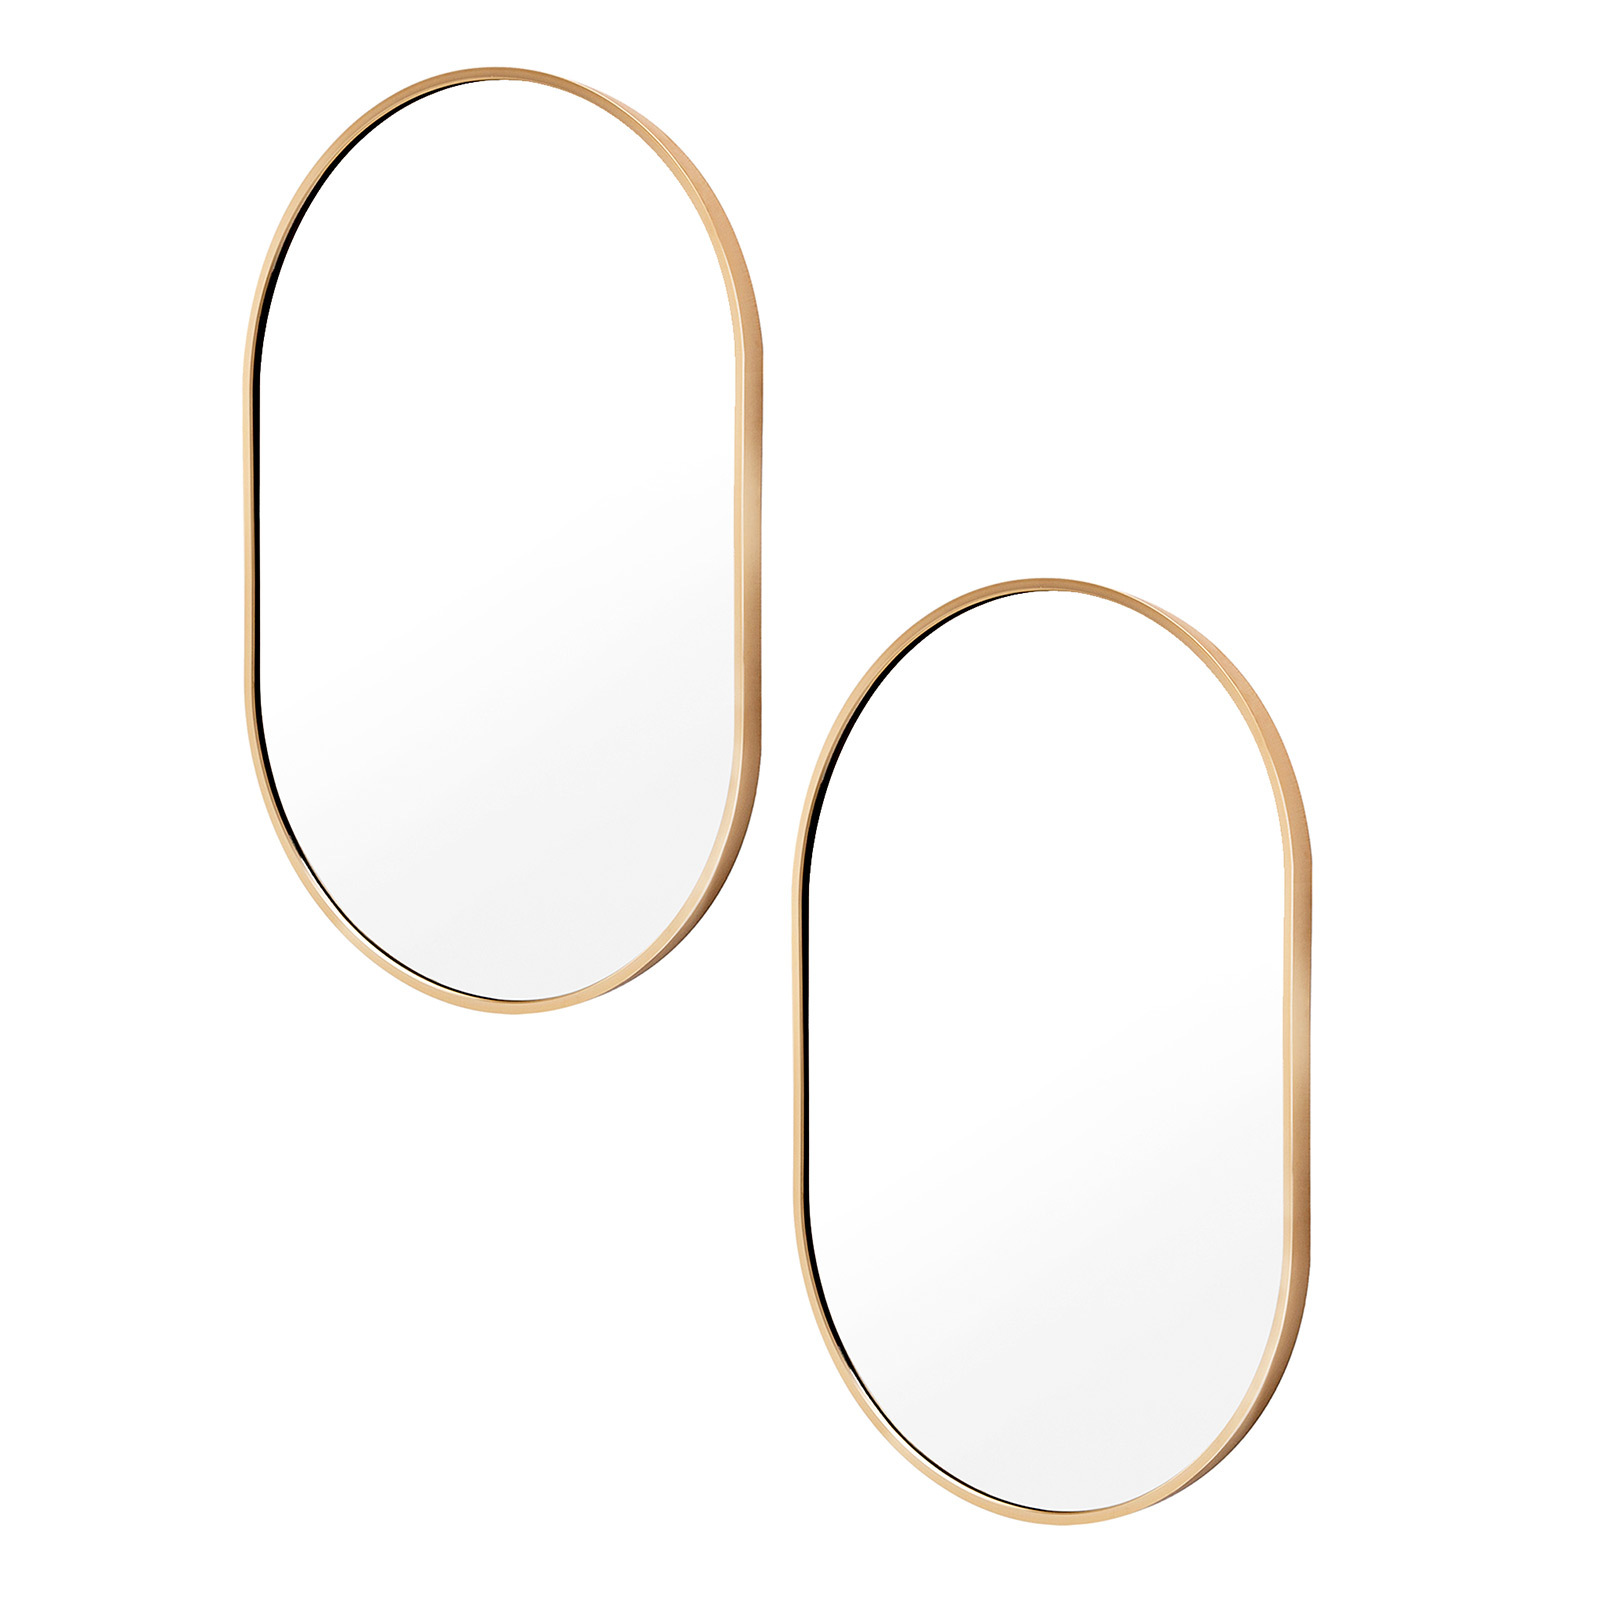 2 Set 50x75cm Wall Mirror Oval Bathroom - GOLD